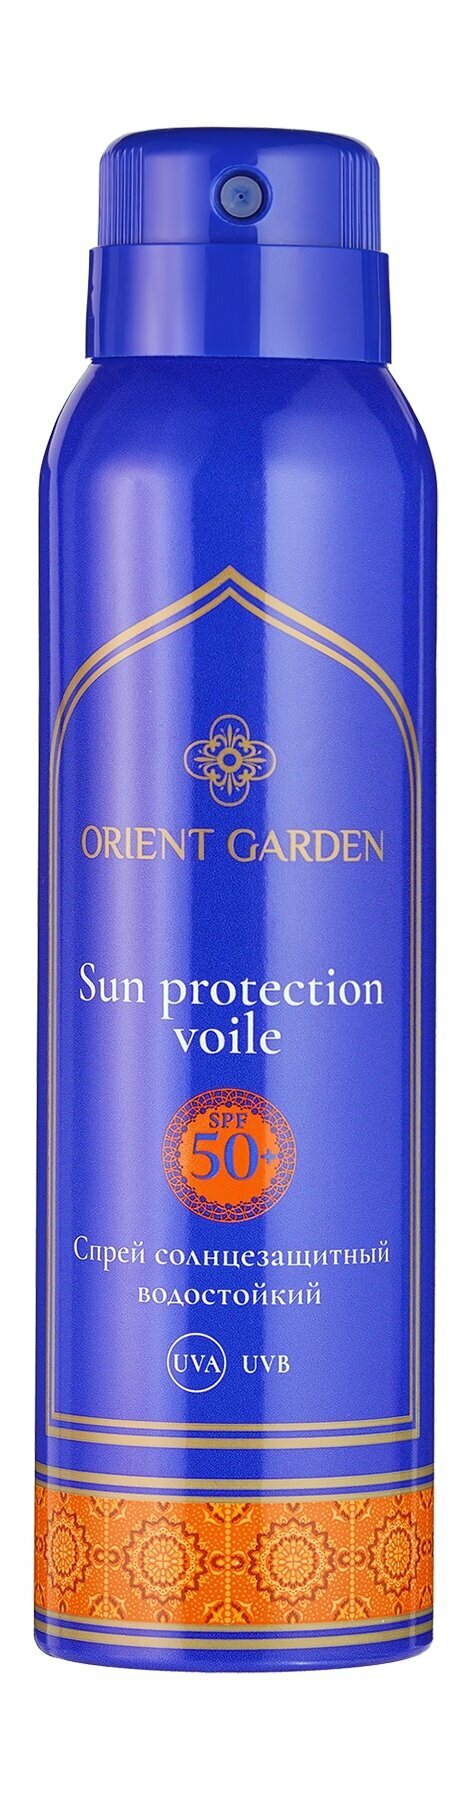 Водостойкий солнцезащитный спрей для тела Orient Garden Sun Protection Voile SPF 50+